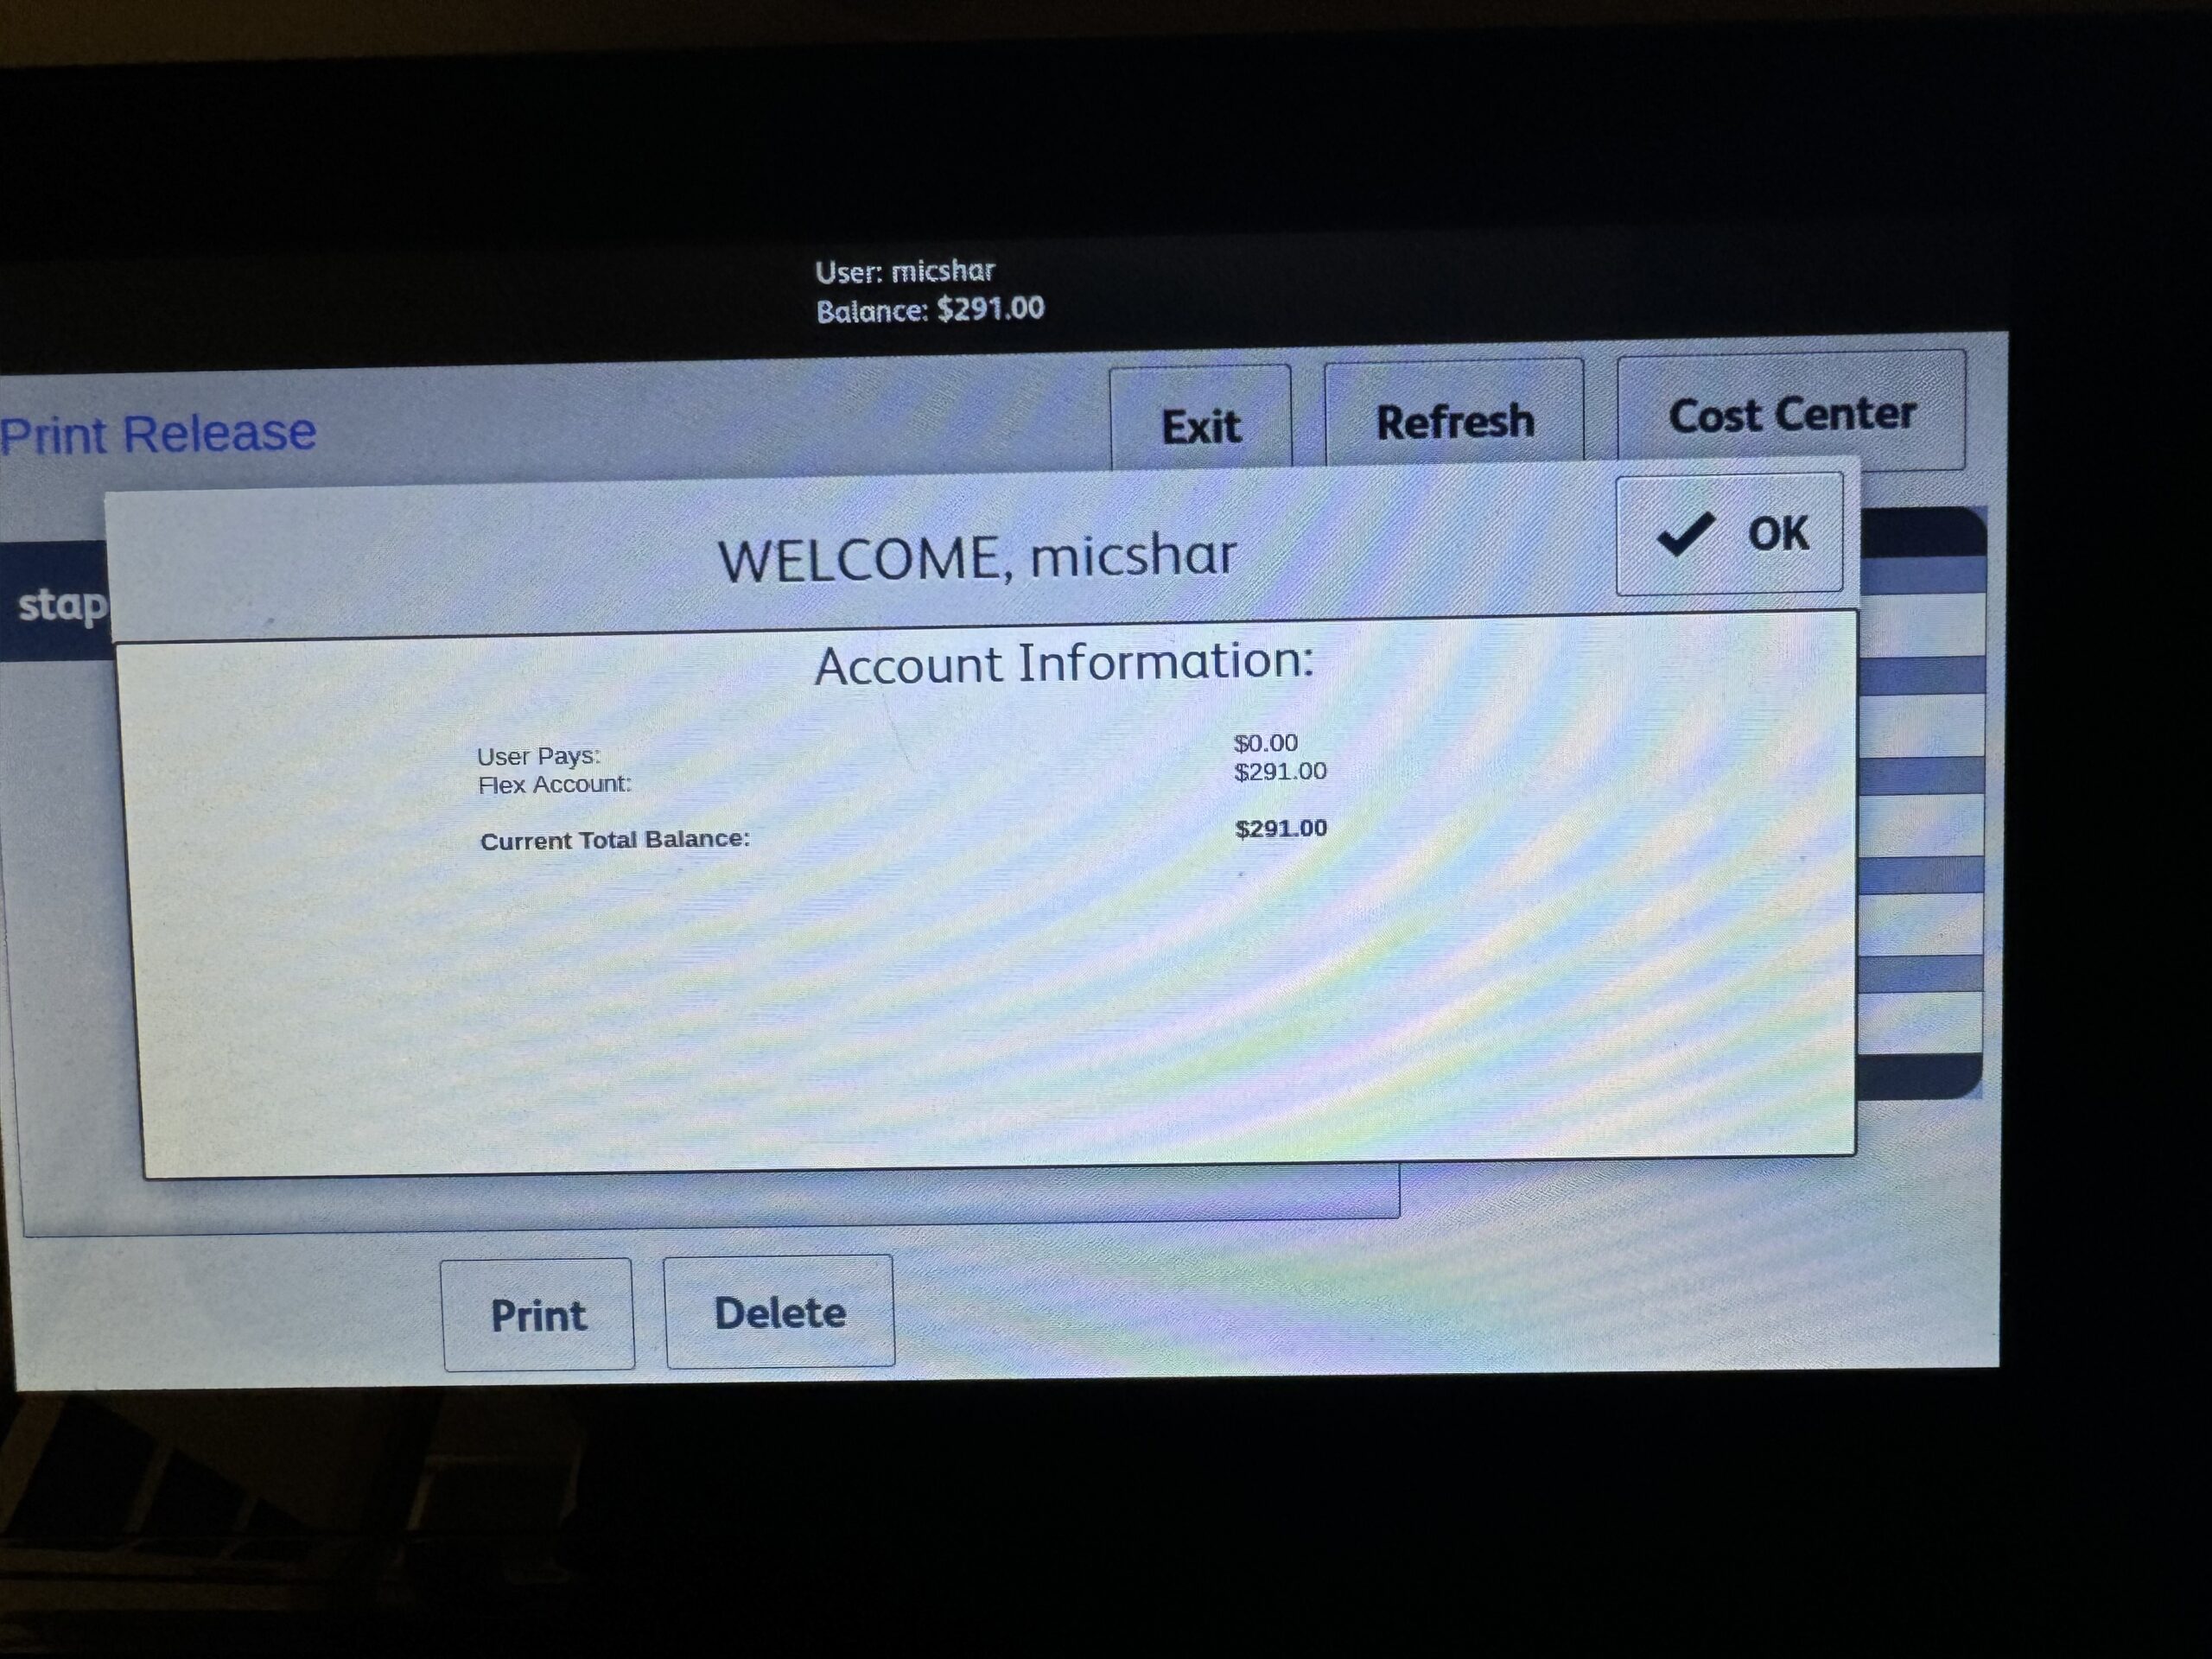 welcome screen on Xerox device